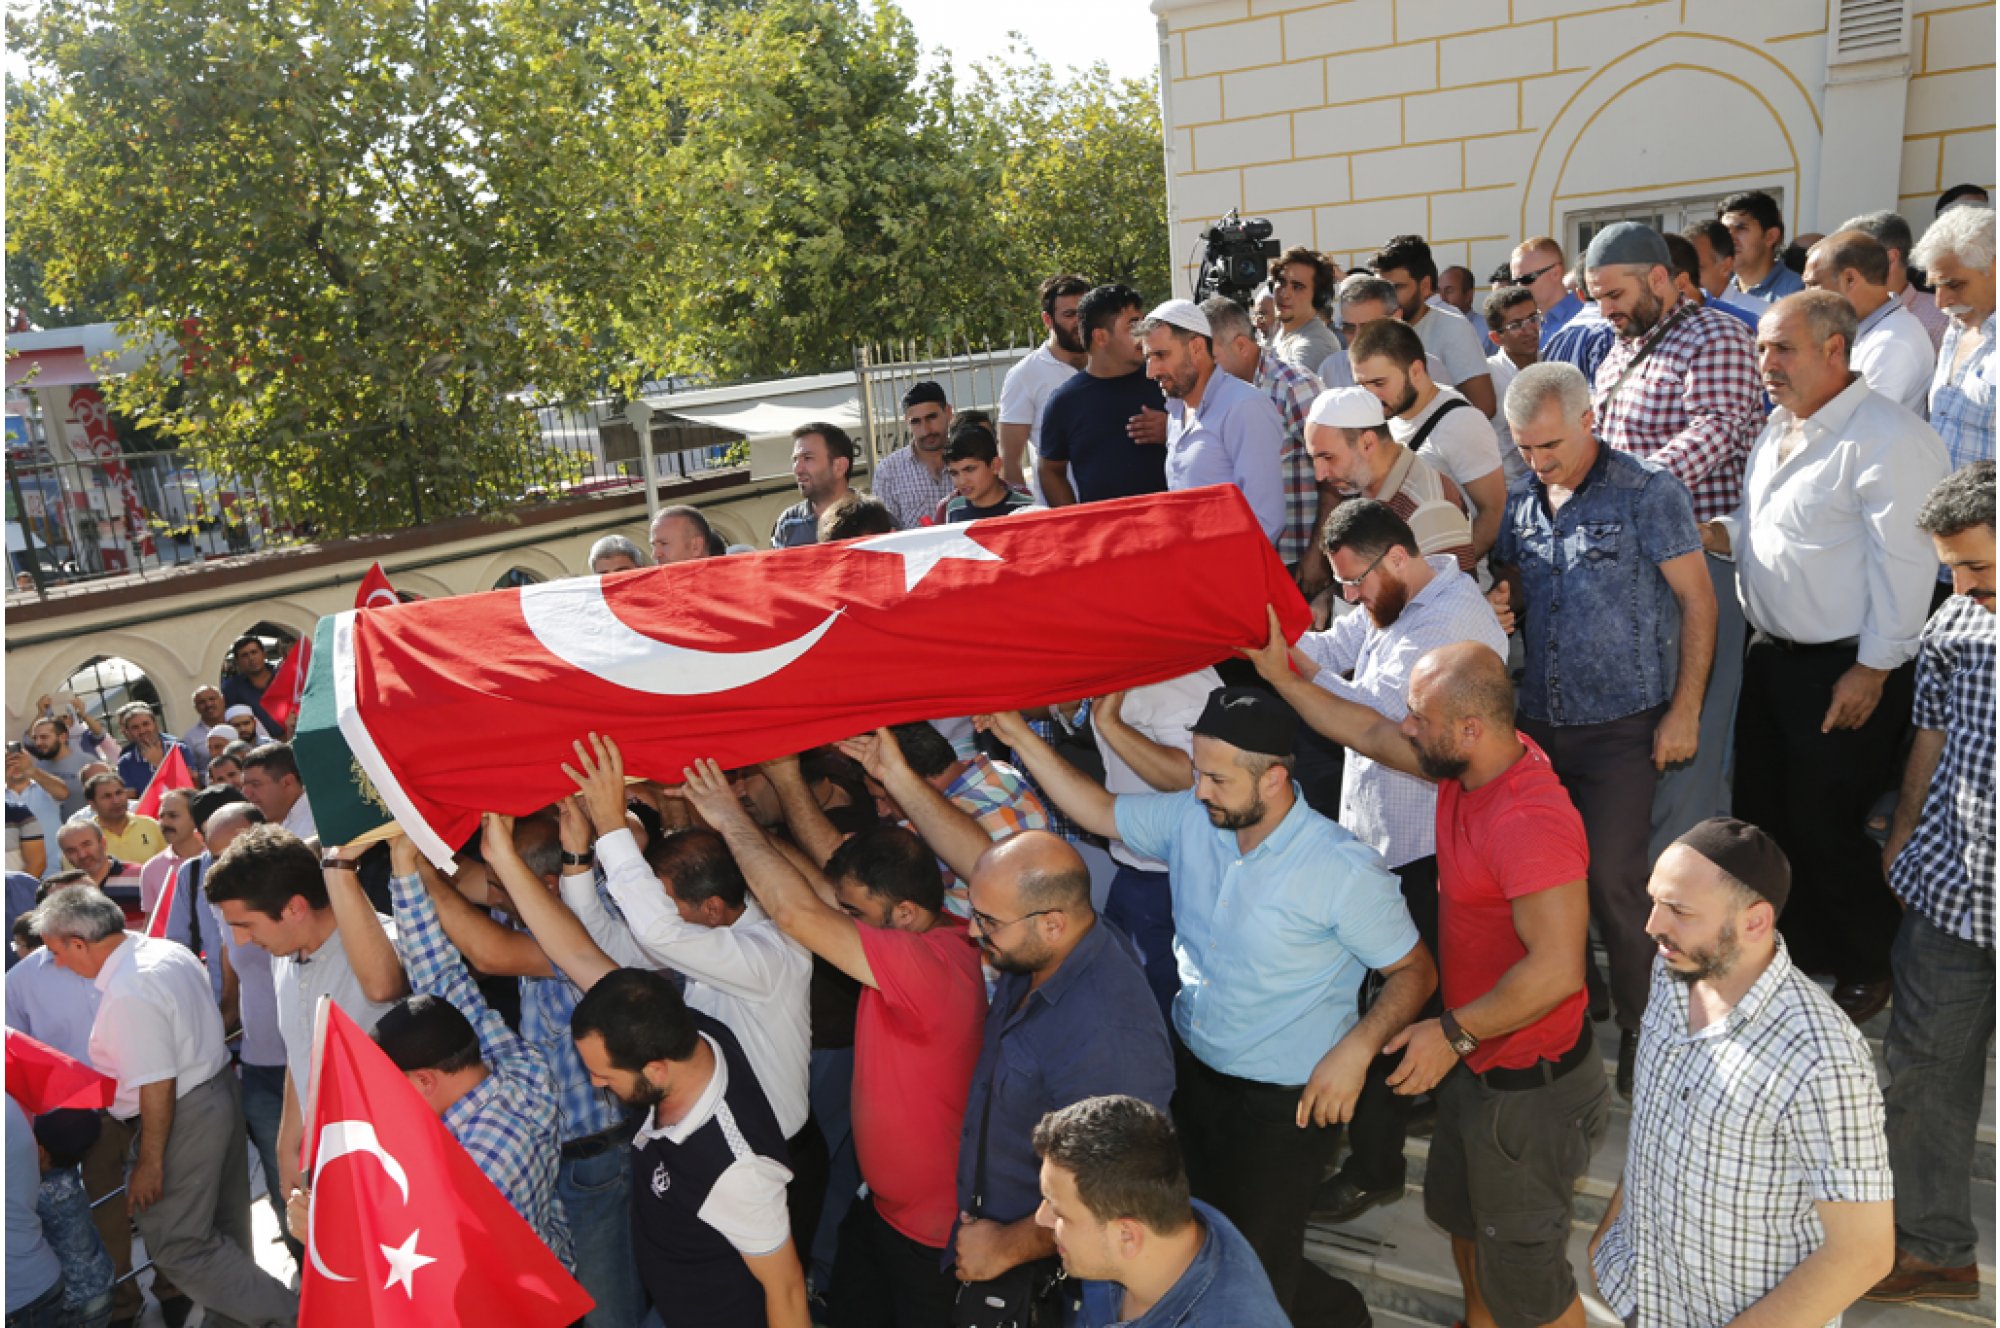 أًخرِجَت جثة الشهيد من هيئة الطب الشرعي في تابوت ملفوف بالعلم التركي.